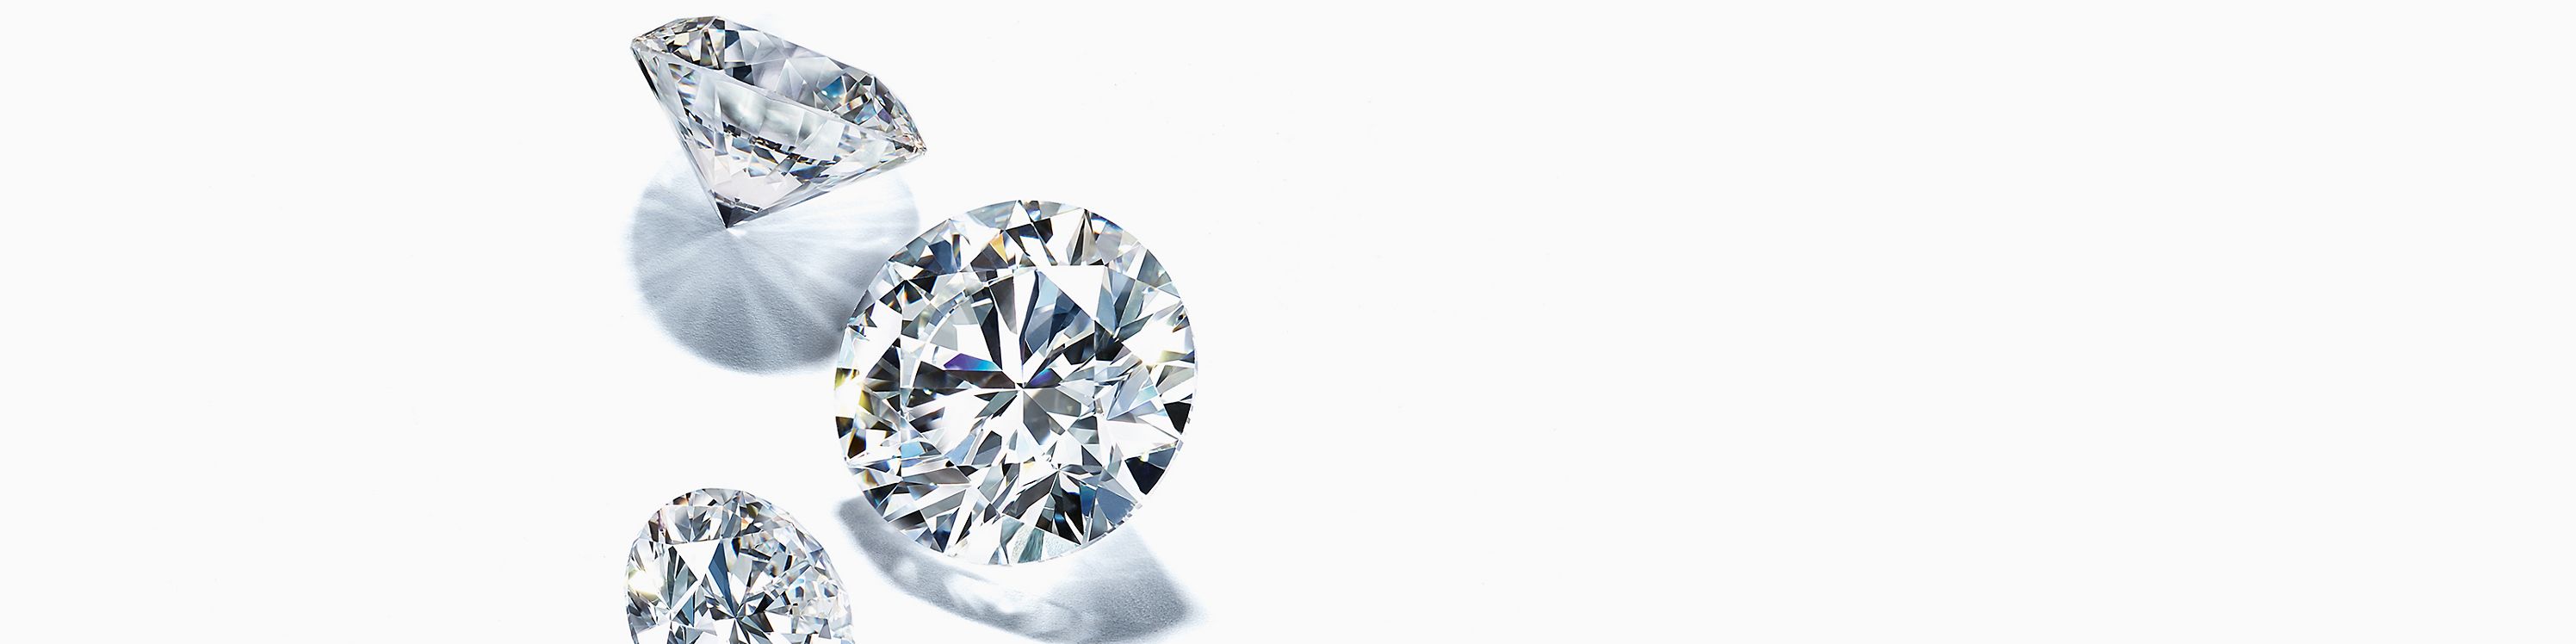 Qué es la talla del diamante